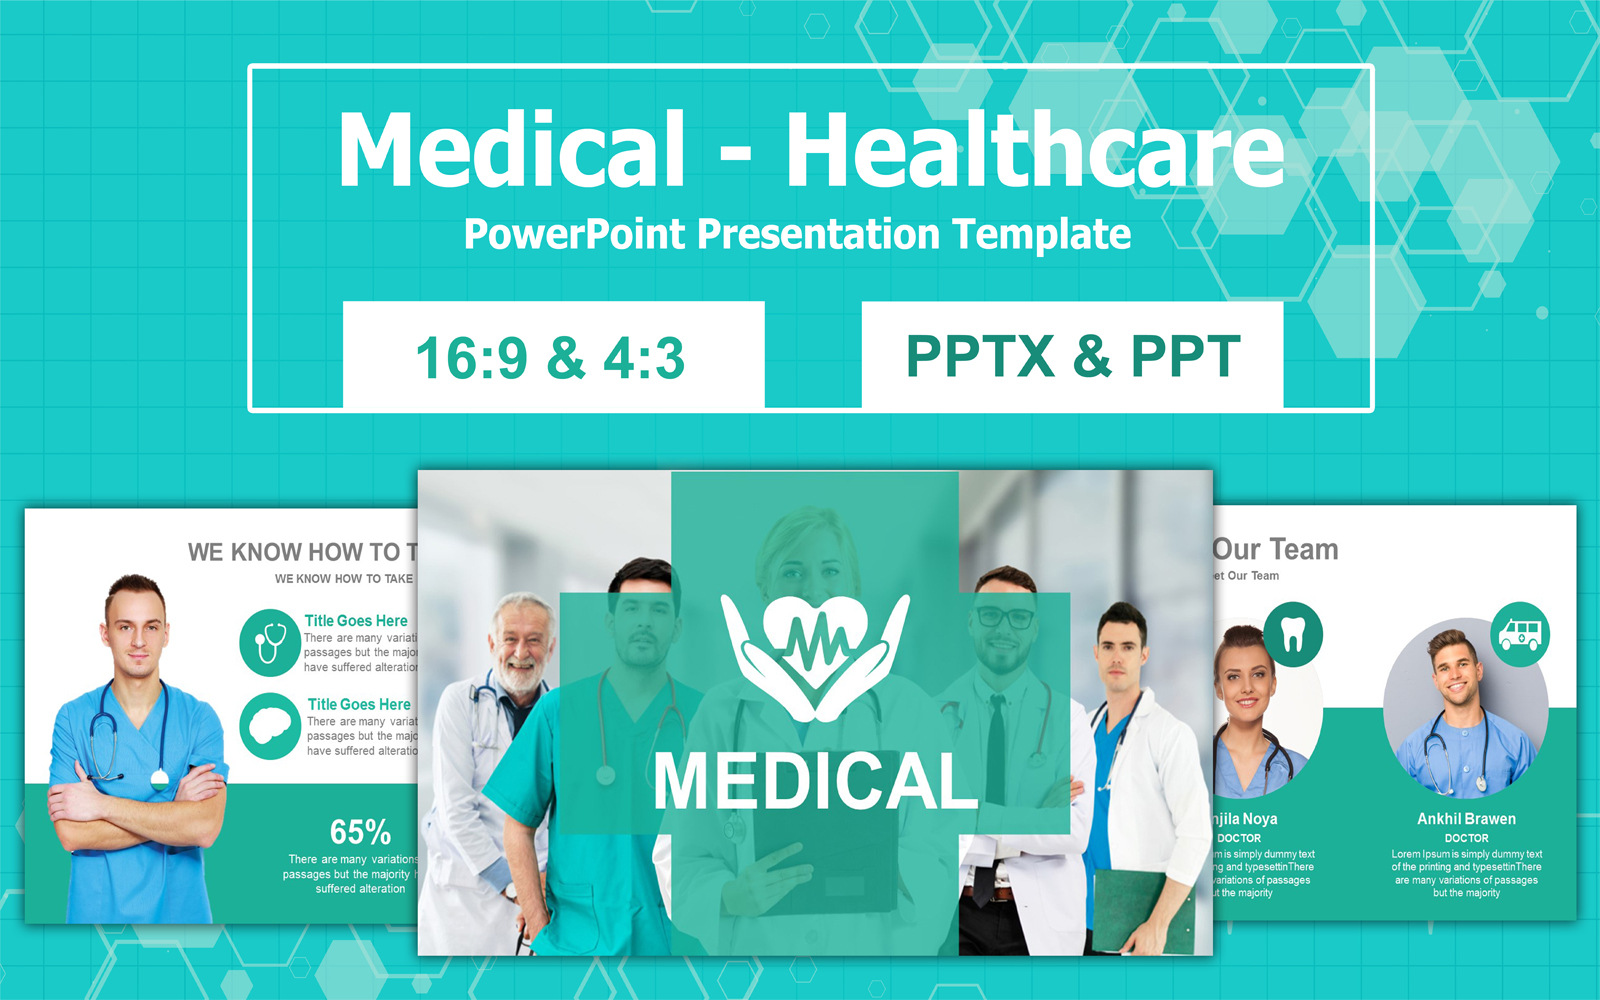 Medical - Healthcare Google Slides Presentation Template